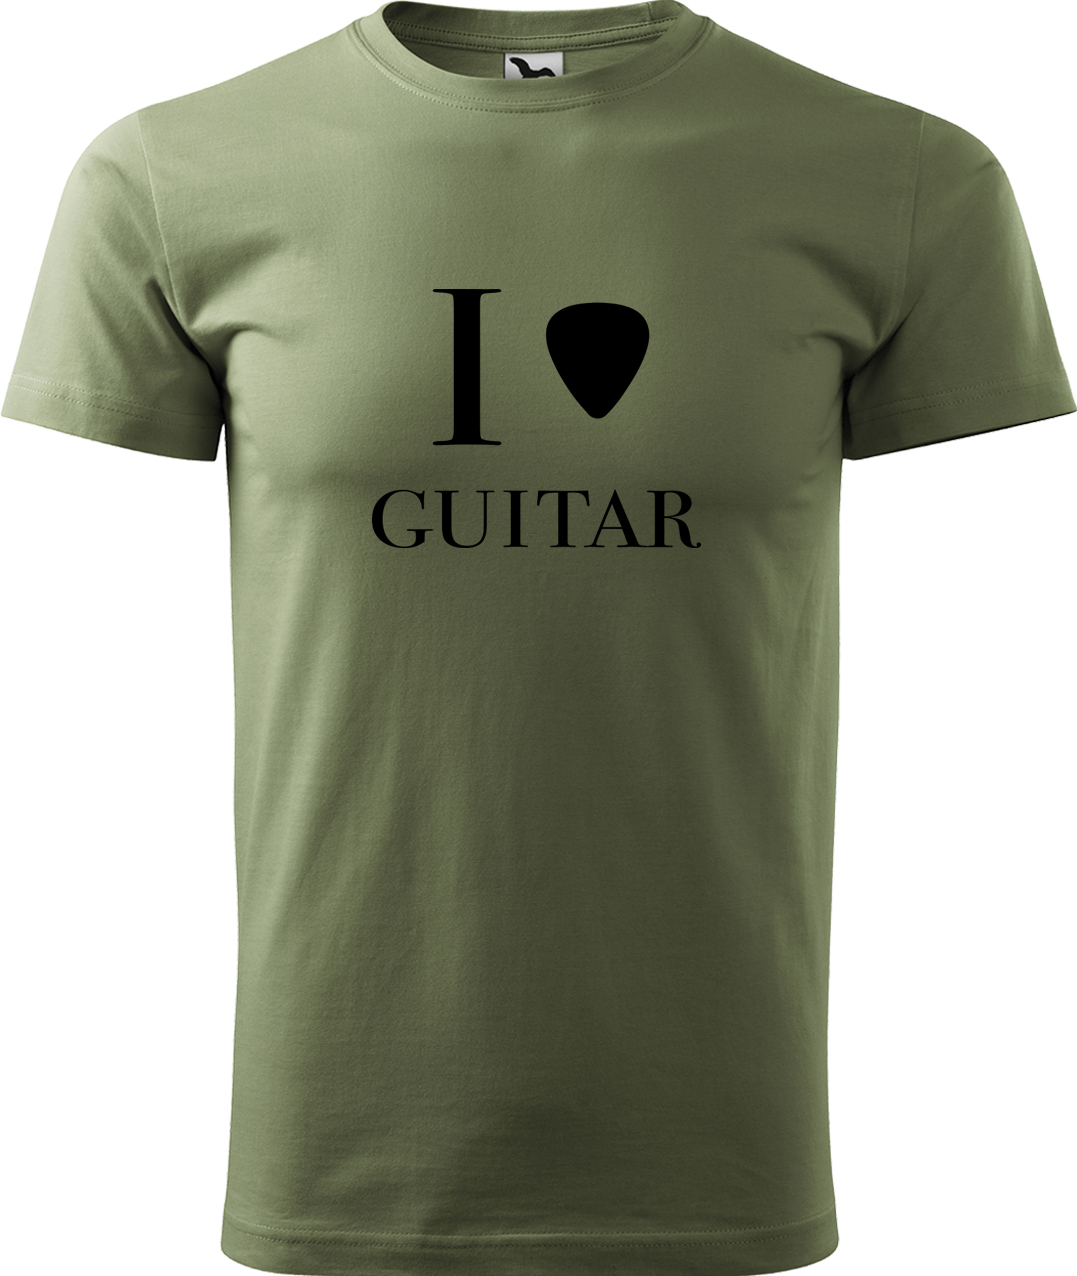 Pánské tričko s kytarou - I love guitar Velikost: XL, Barva: Světlá khaki (28), Střih: pánský